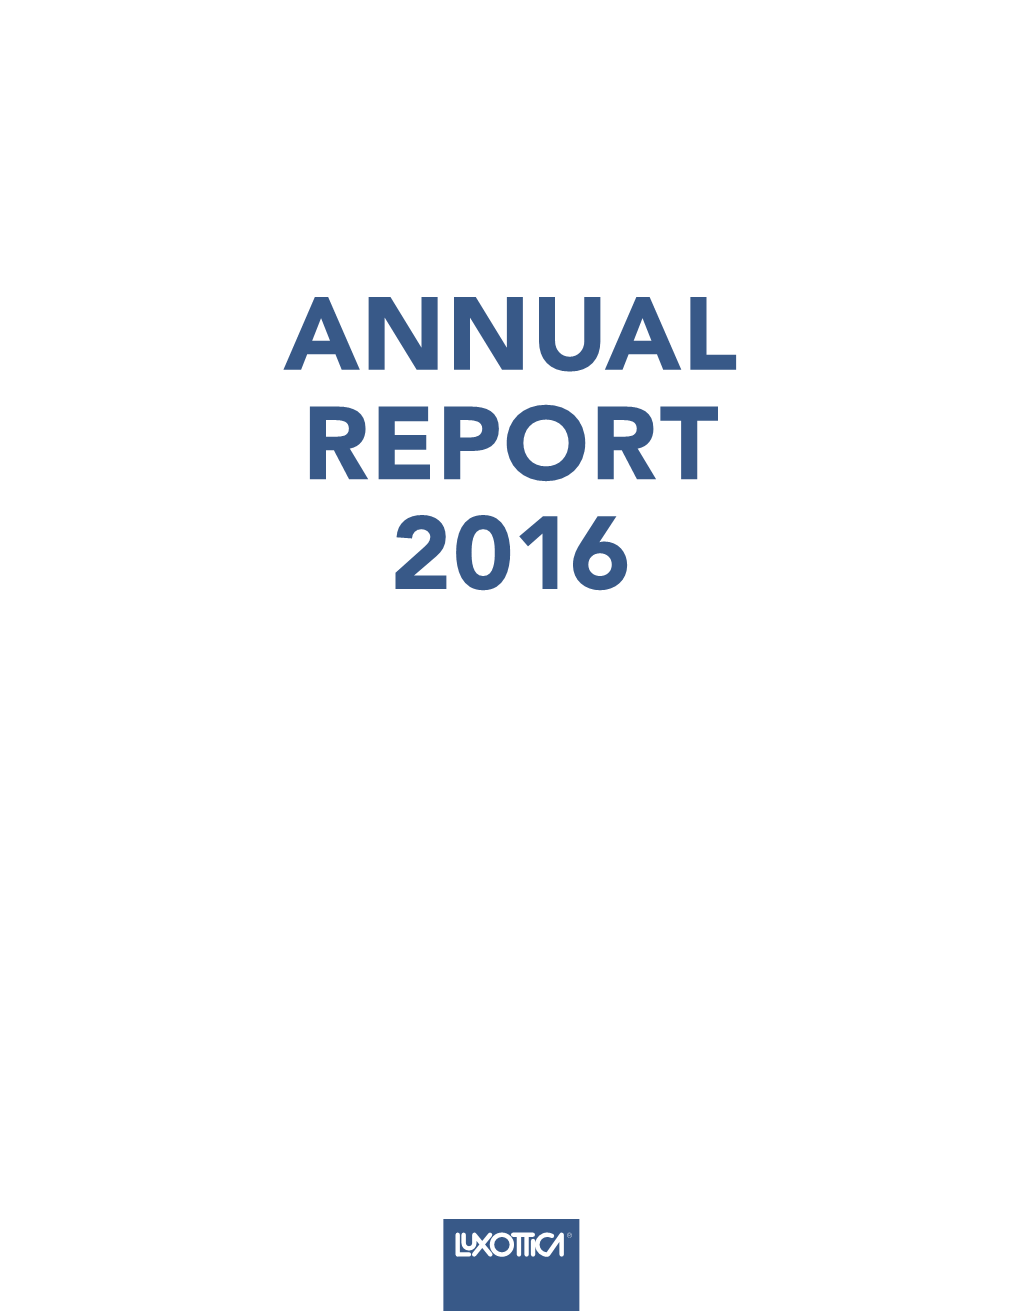 Annual Report 2016 Annual Report 2016